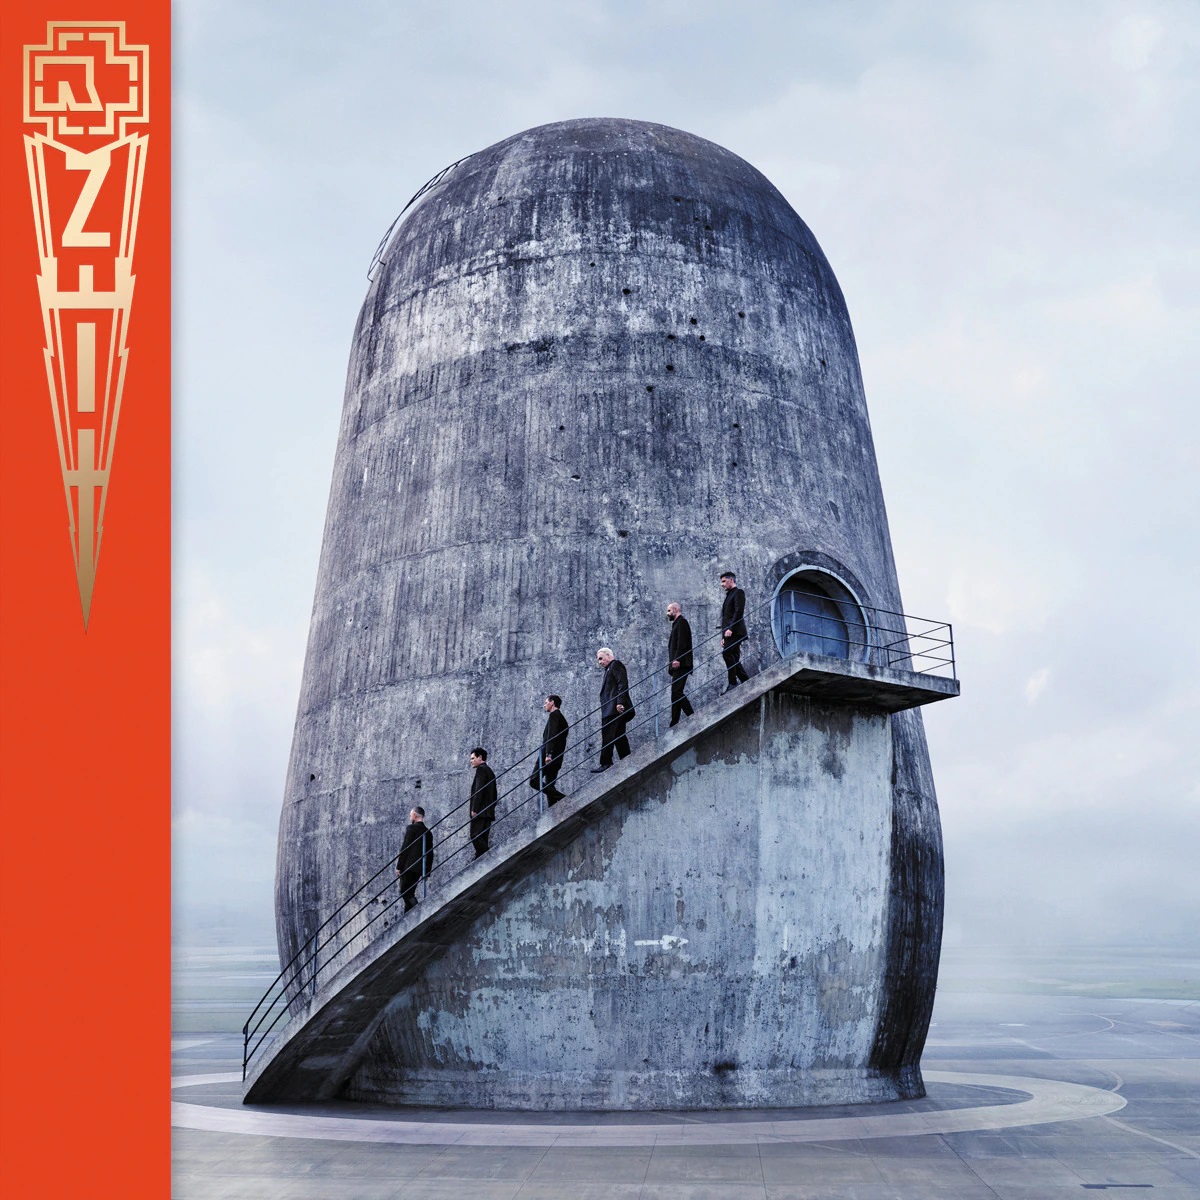 Rammstein — Lügen cover artwork